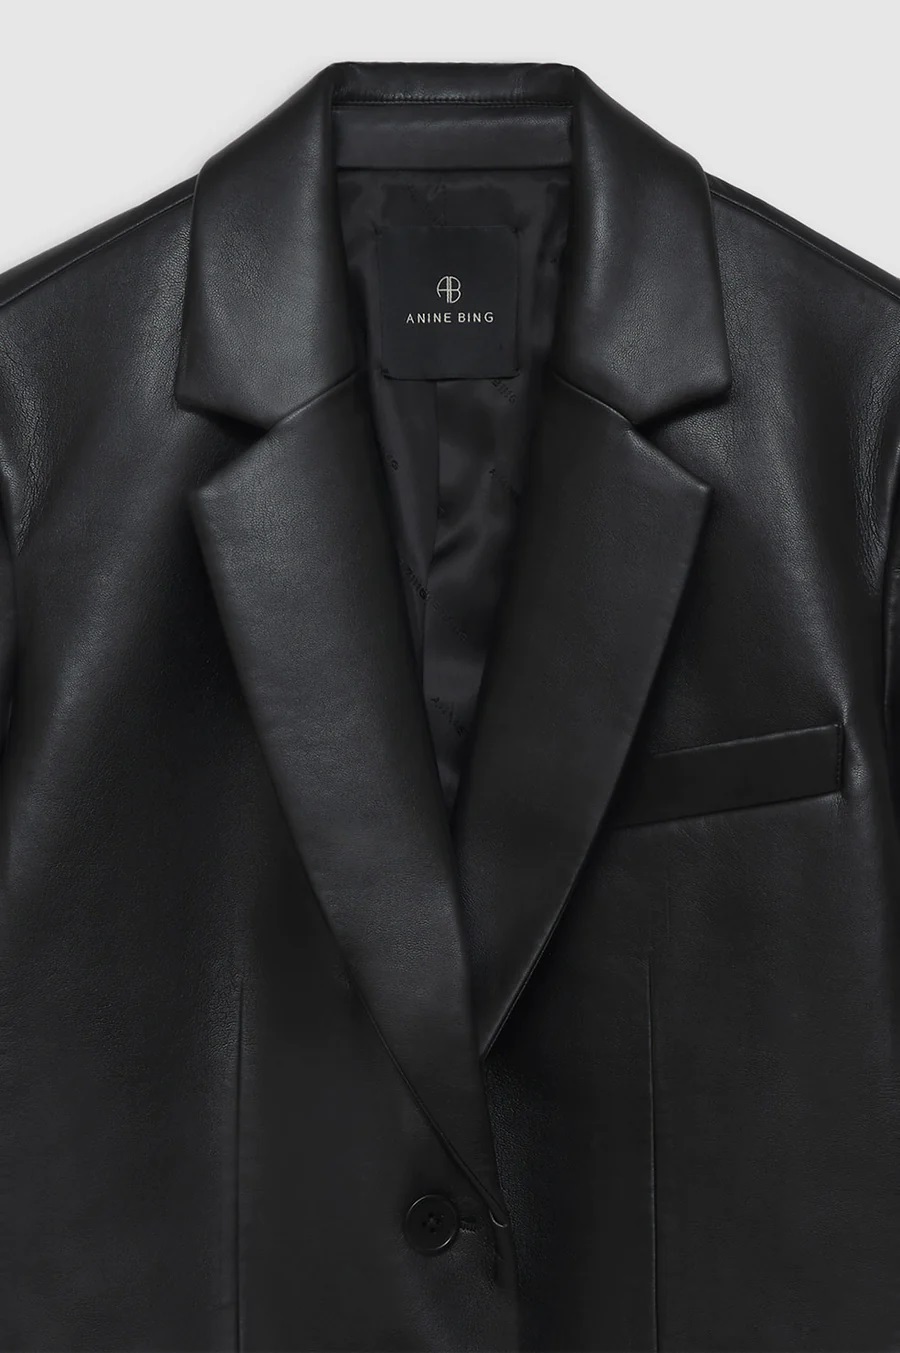 ANINE BING Classic Blazer in Black Recycled Leather XXS